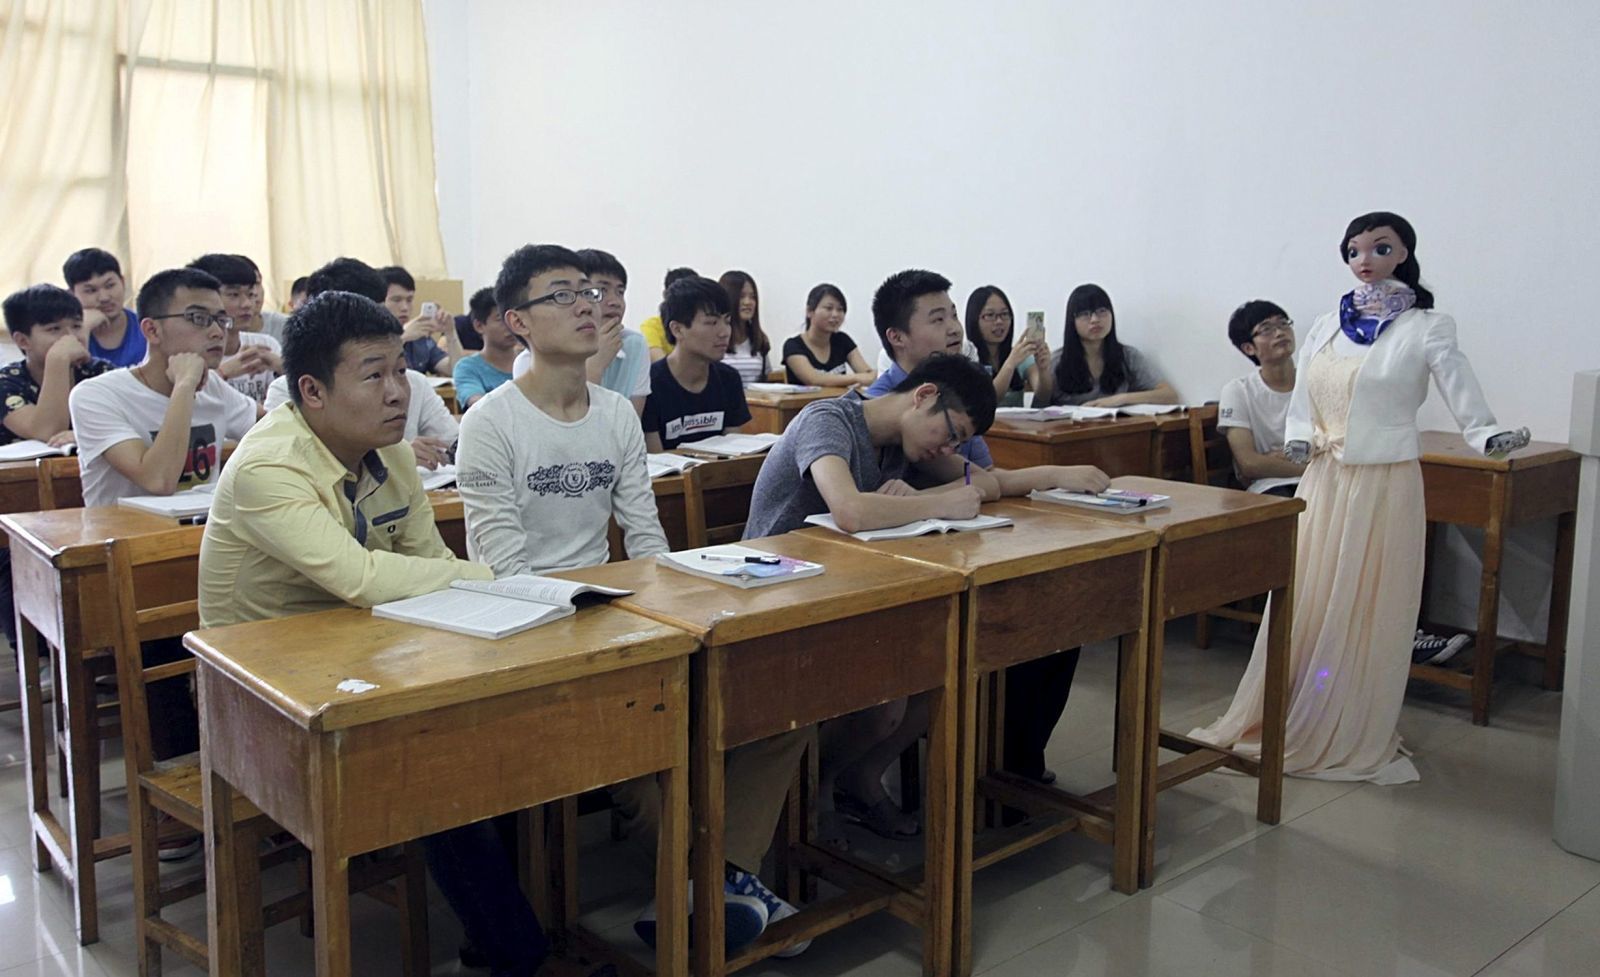 9,4 triệu thí sinh Trung Quốc bước vào kỳ thi đại học cùng robot